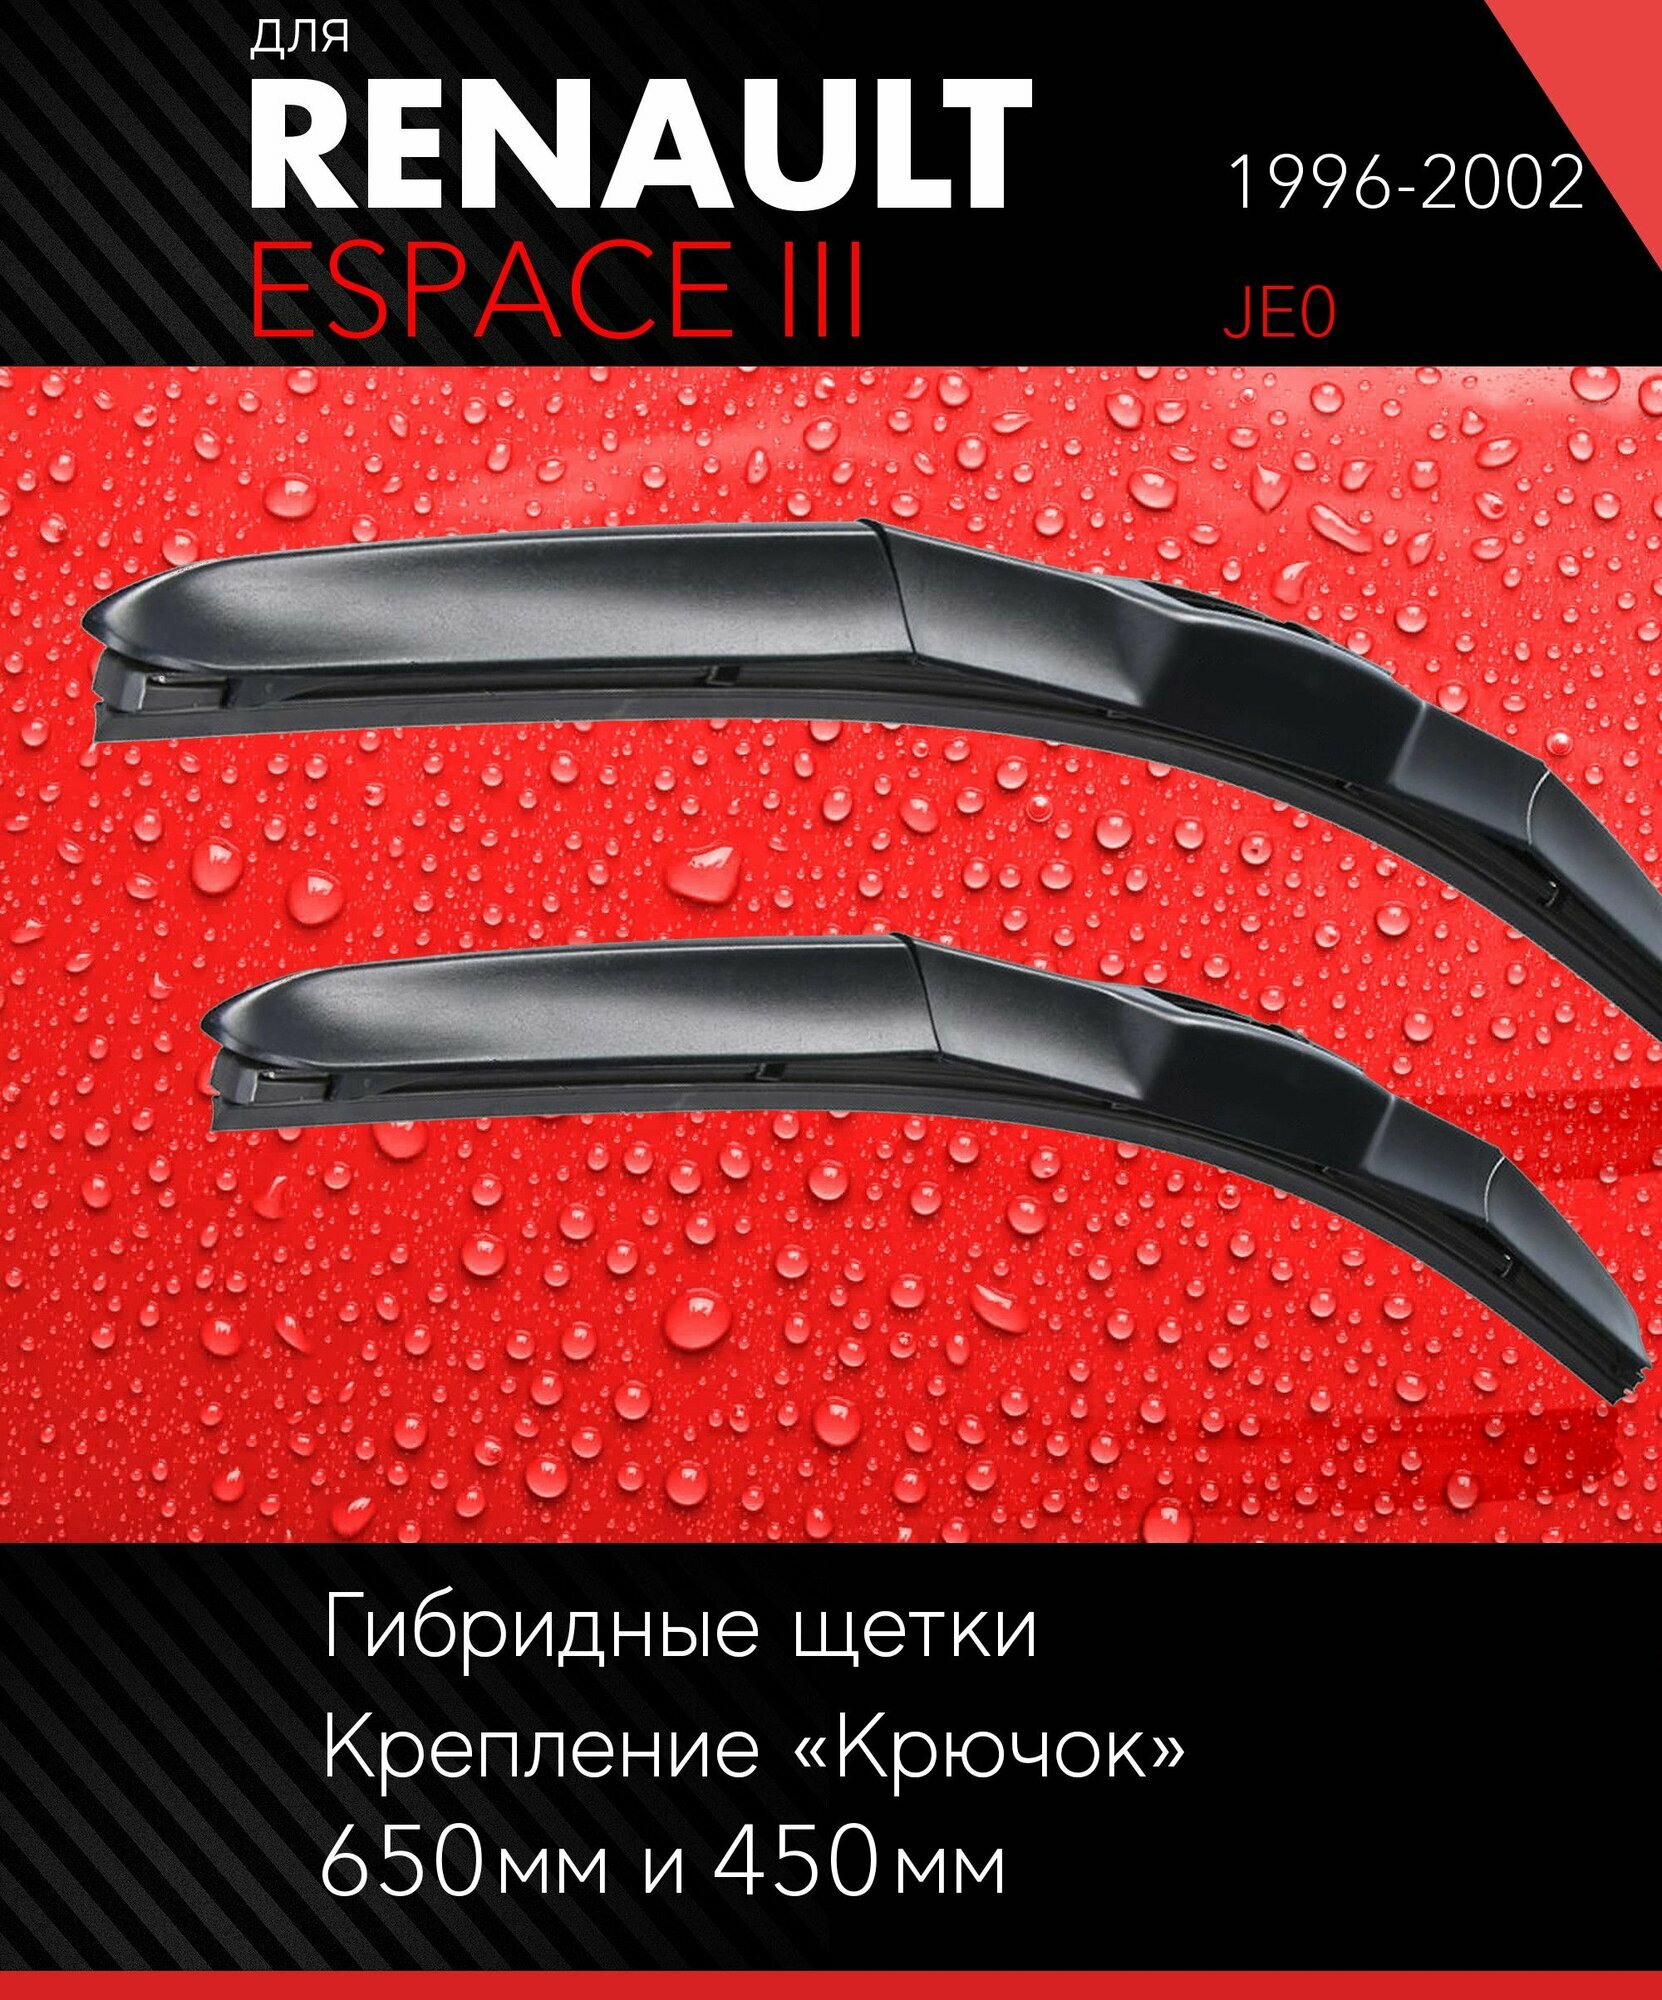 2 щетки стеклоочистителя 650 450 мм на Рено Эспейс 3 1996-2002, гибридные дворники комплект для Renault Espace III (JE0) - Autoled